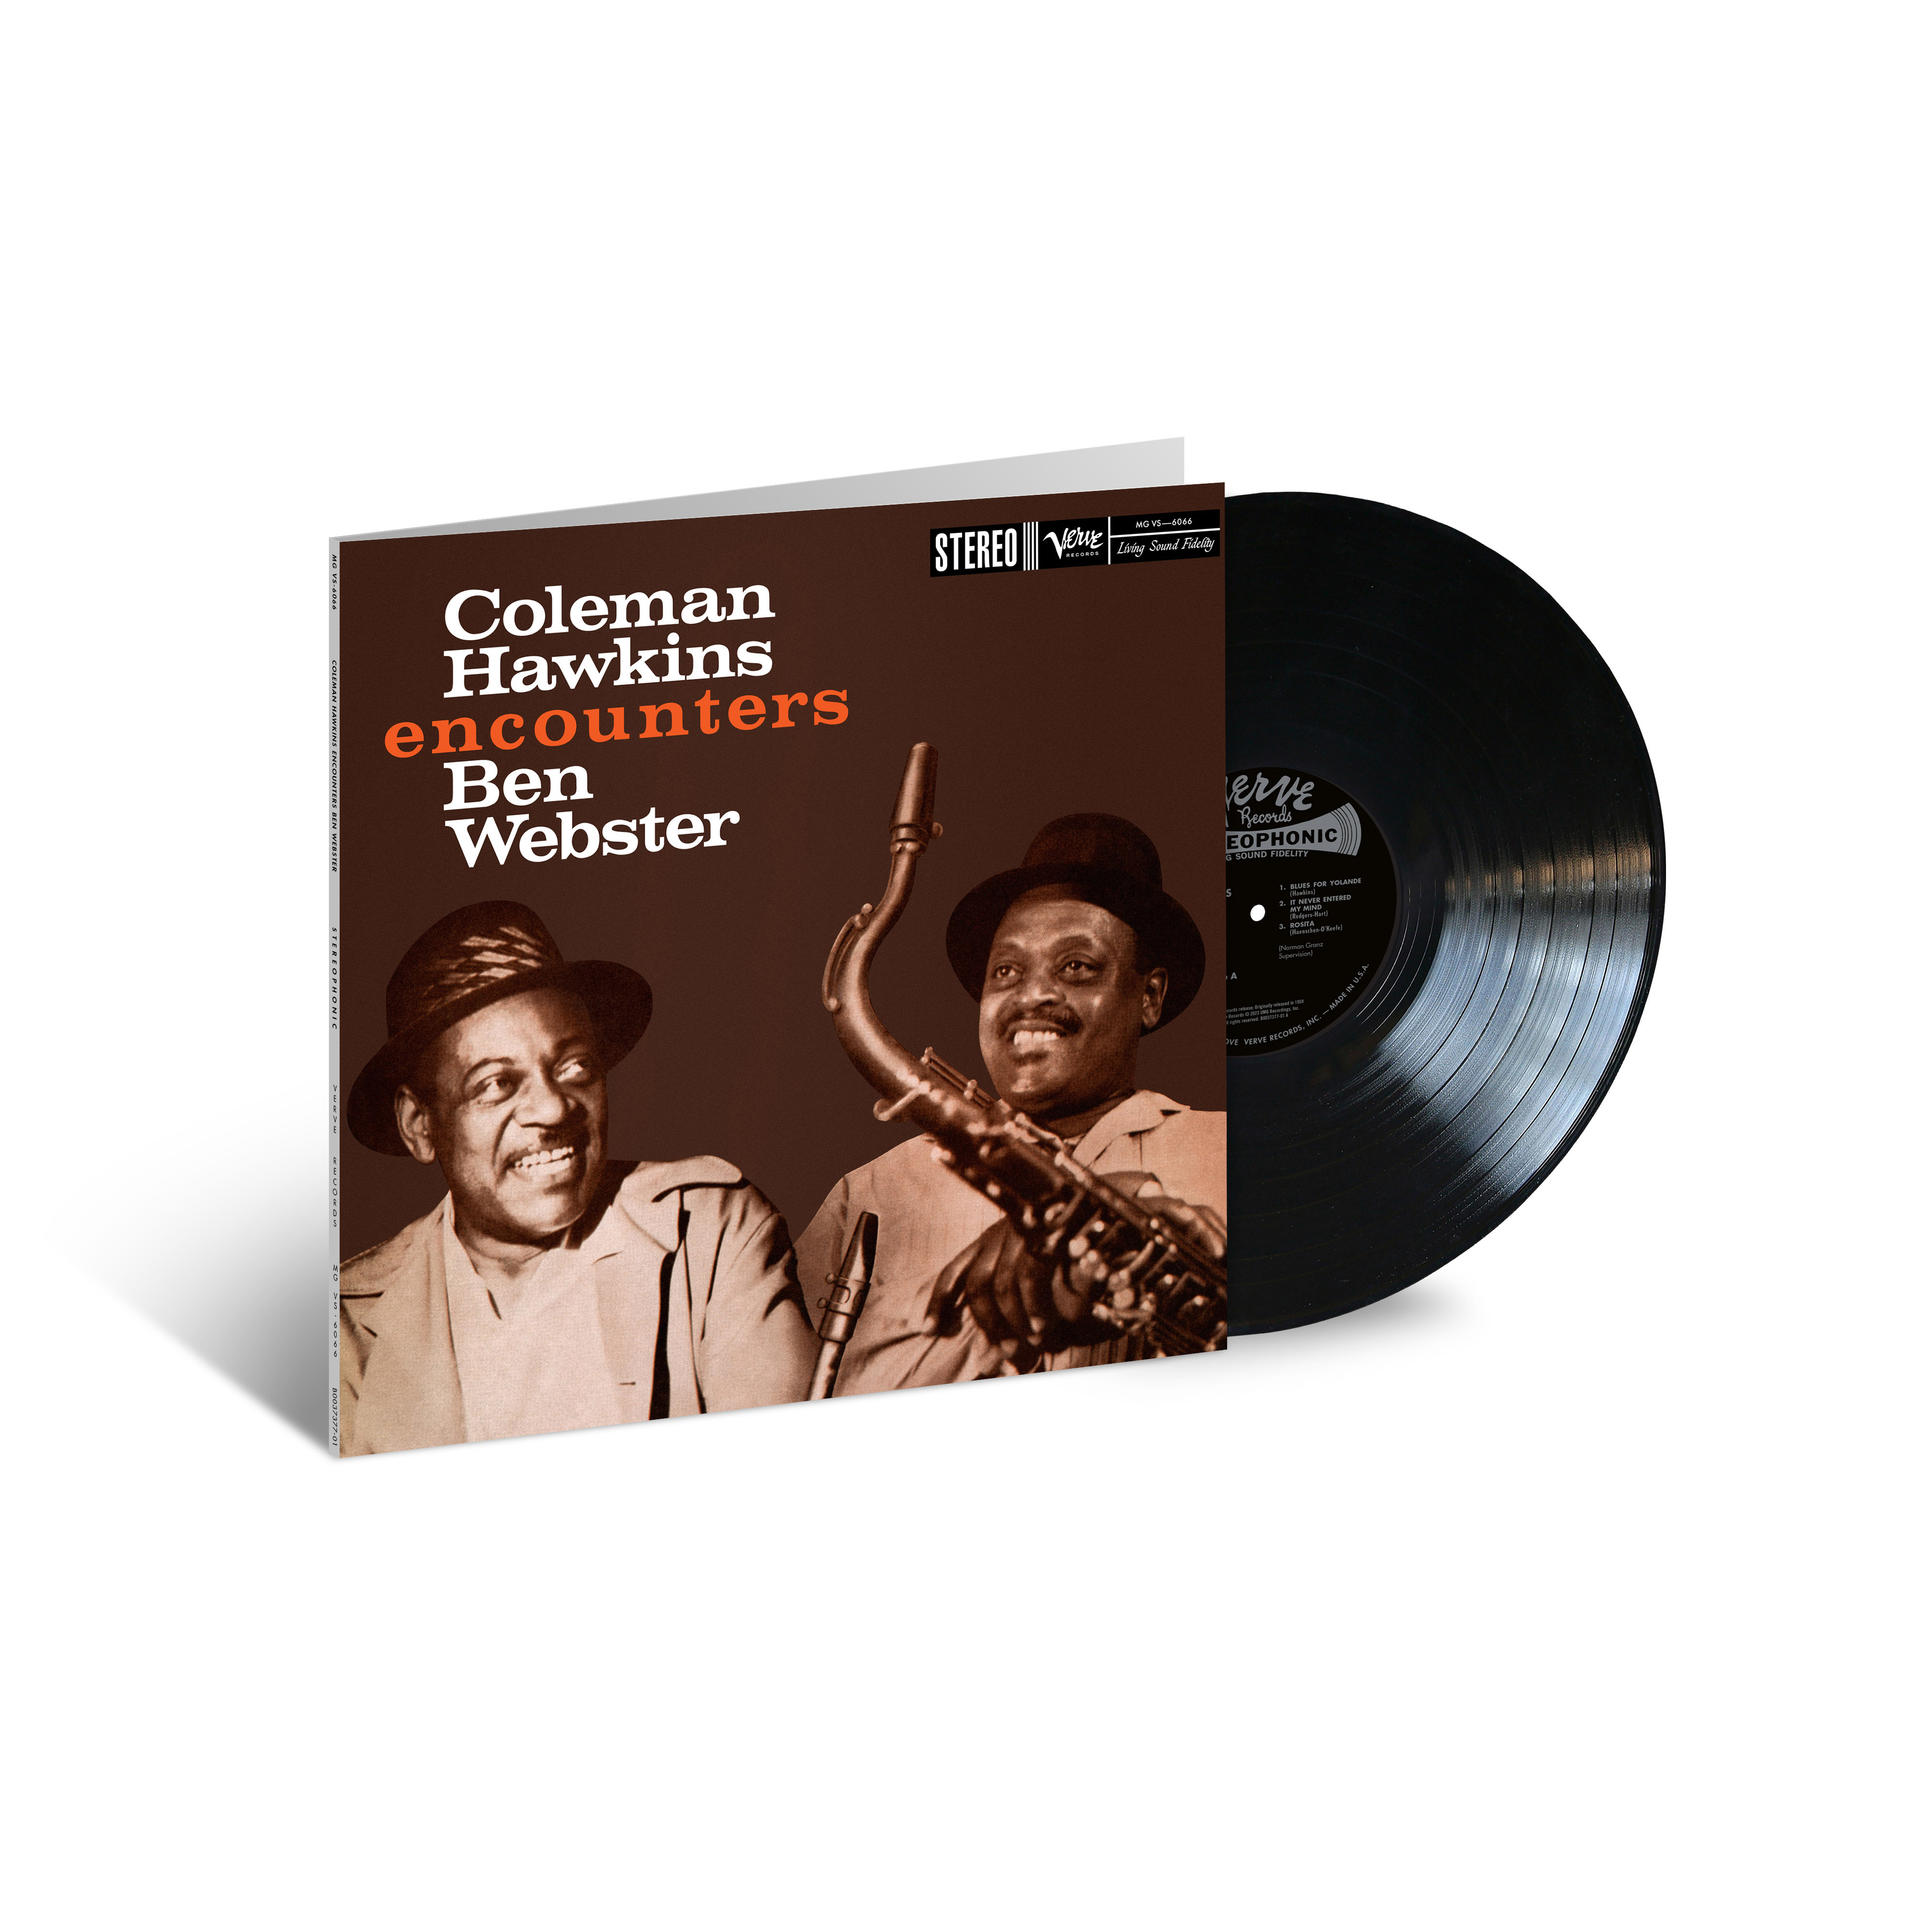 Ben Webster, (Vinyl) Ben Coleman Webster - Hawkins Encounters Hawkins Sounds) (Acoustic 